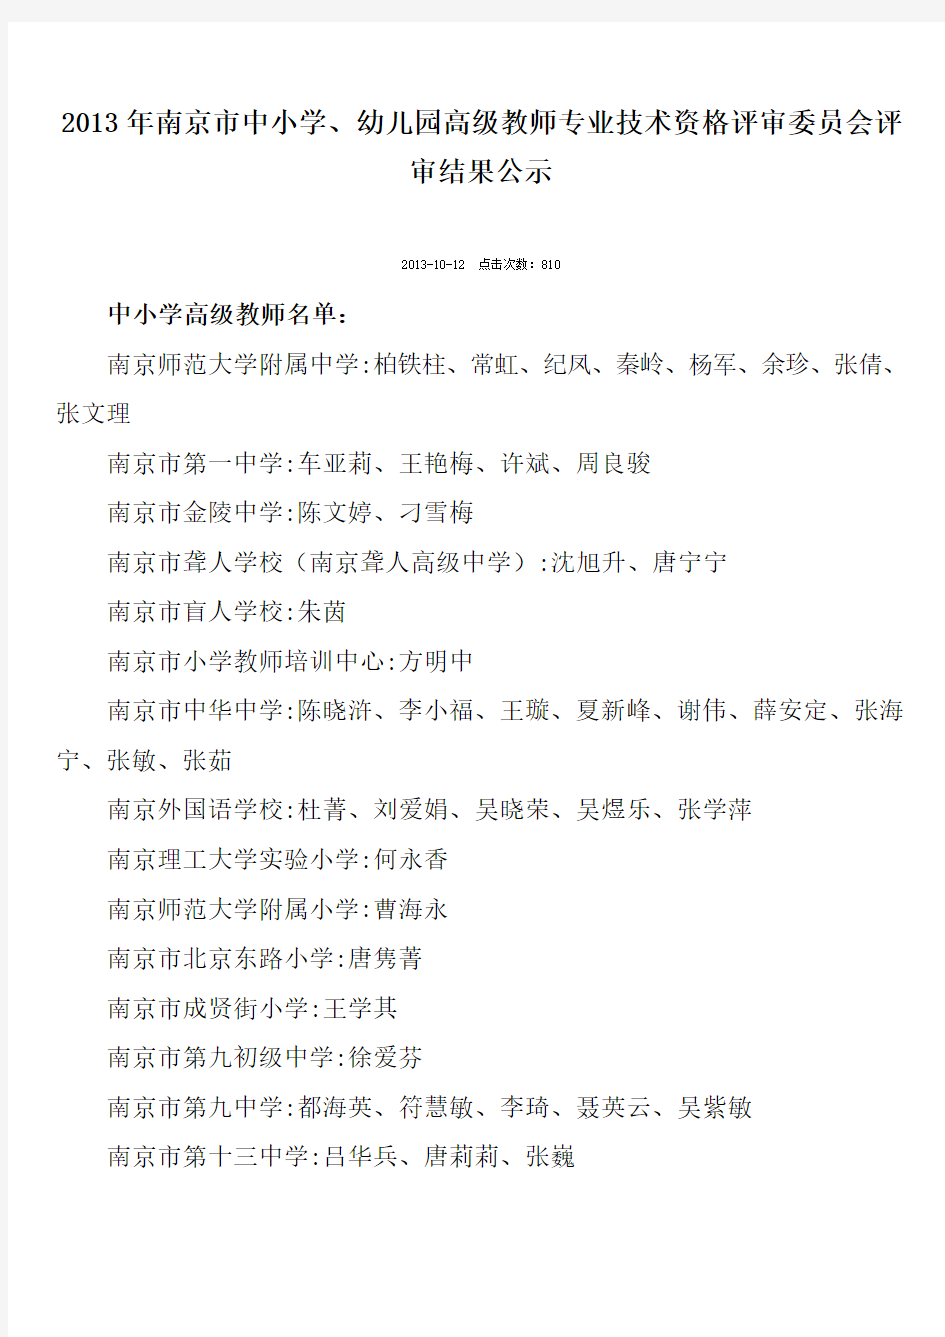 2013年南京市中小学、幼儿园高级教师评审结果公示